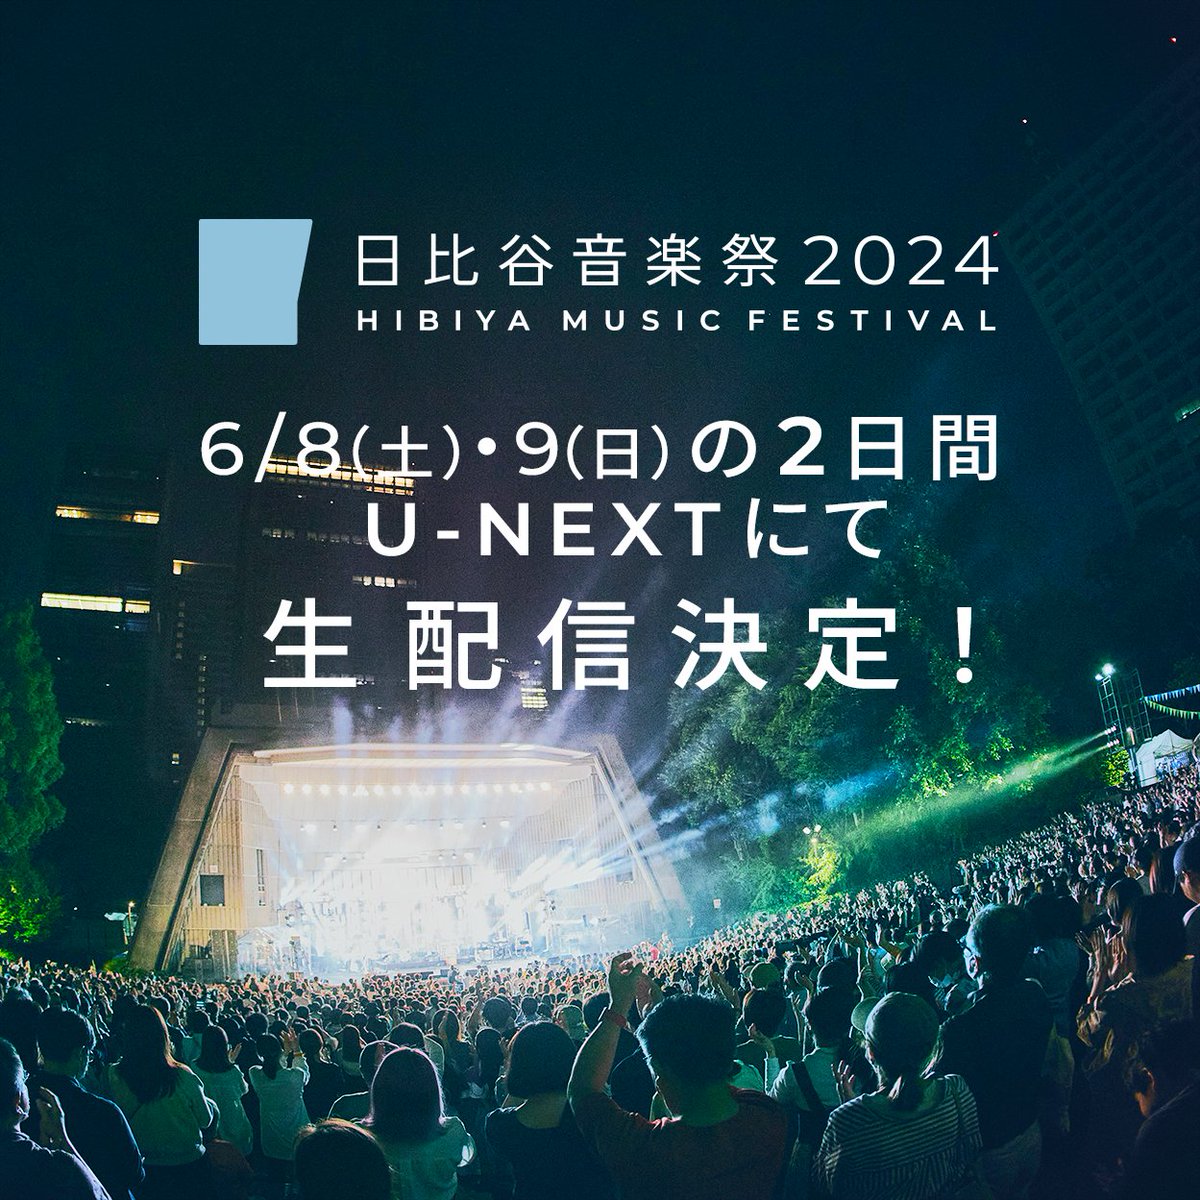 ＼オンライン生配信決定／ よりたくさんの方に音楽体験をお届けするために #日比谷音楽祭 2024をU-NEXTにて生配信します！ U-NEXTの月額プラン会員の方ならどなたでもご視聴可能、現在会員ではない方も「31日間の無料トライアル」を活用してお楽しみいただけます 詳細は↓ hibiyamusicfes.jp/2024/how_to_en…